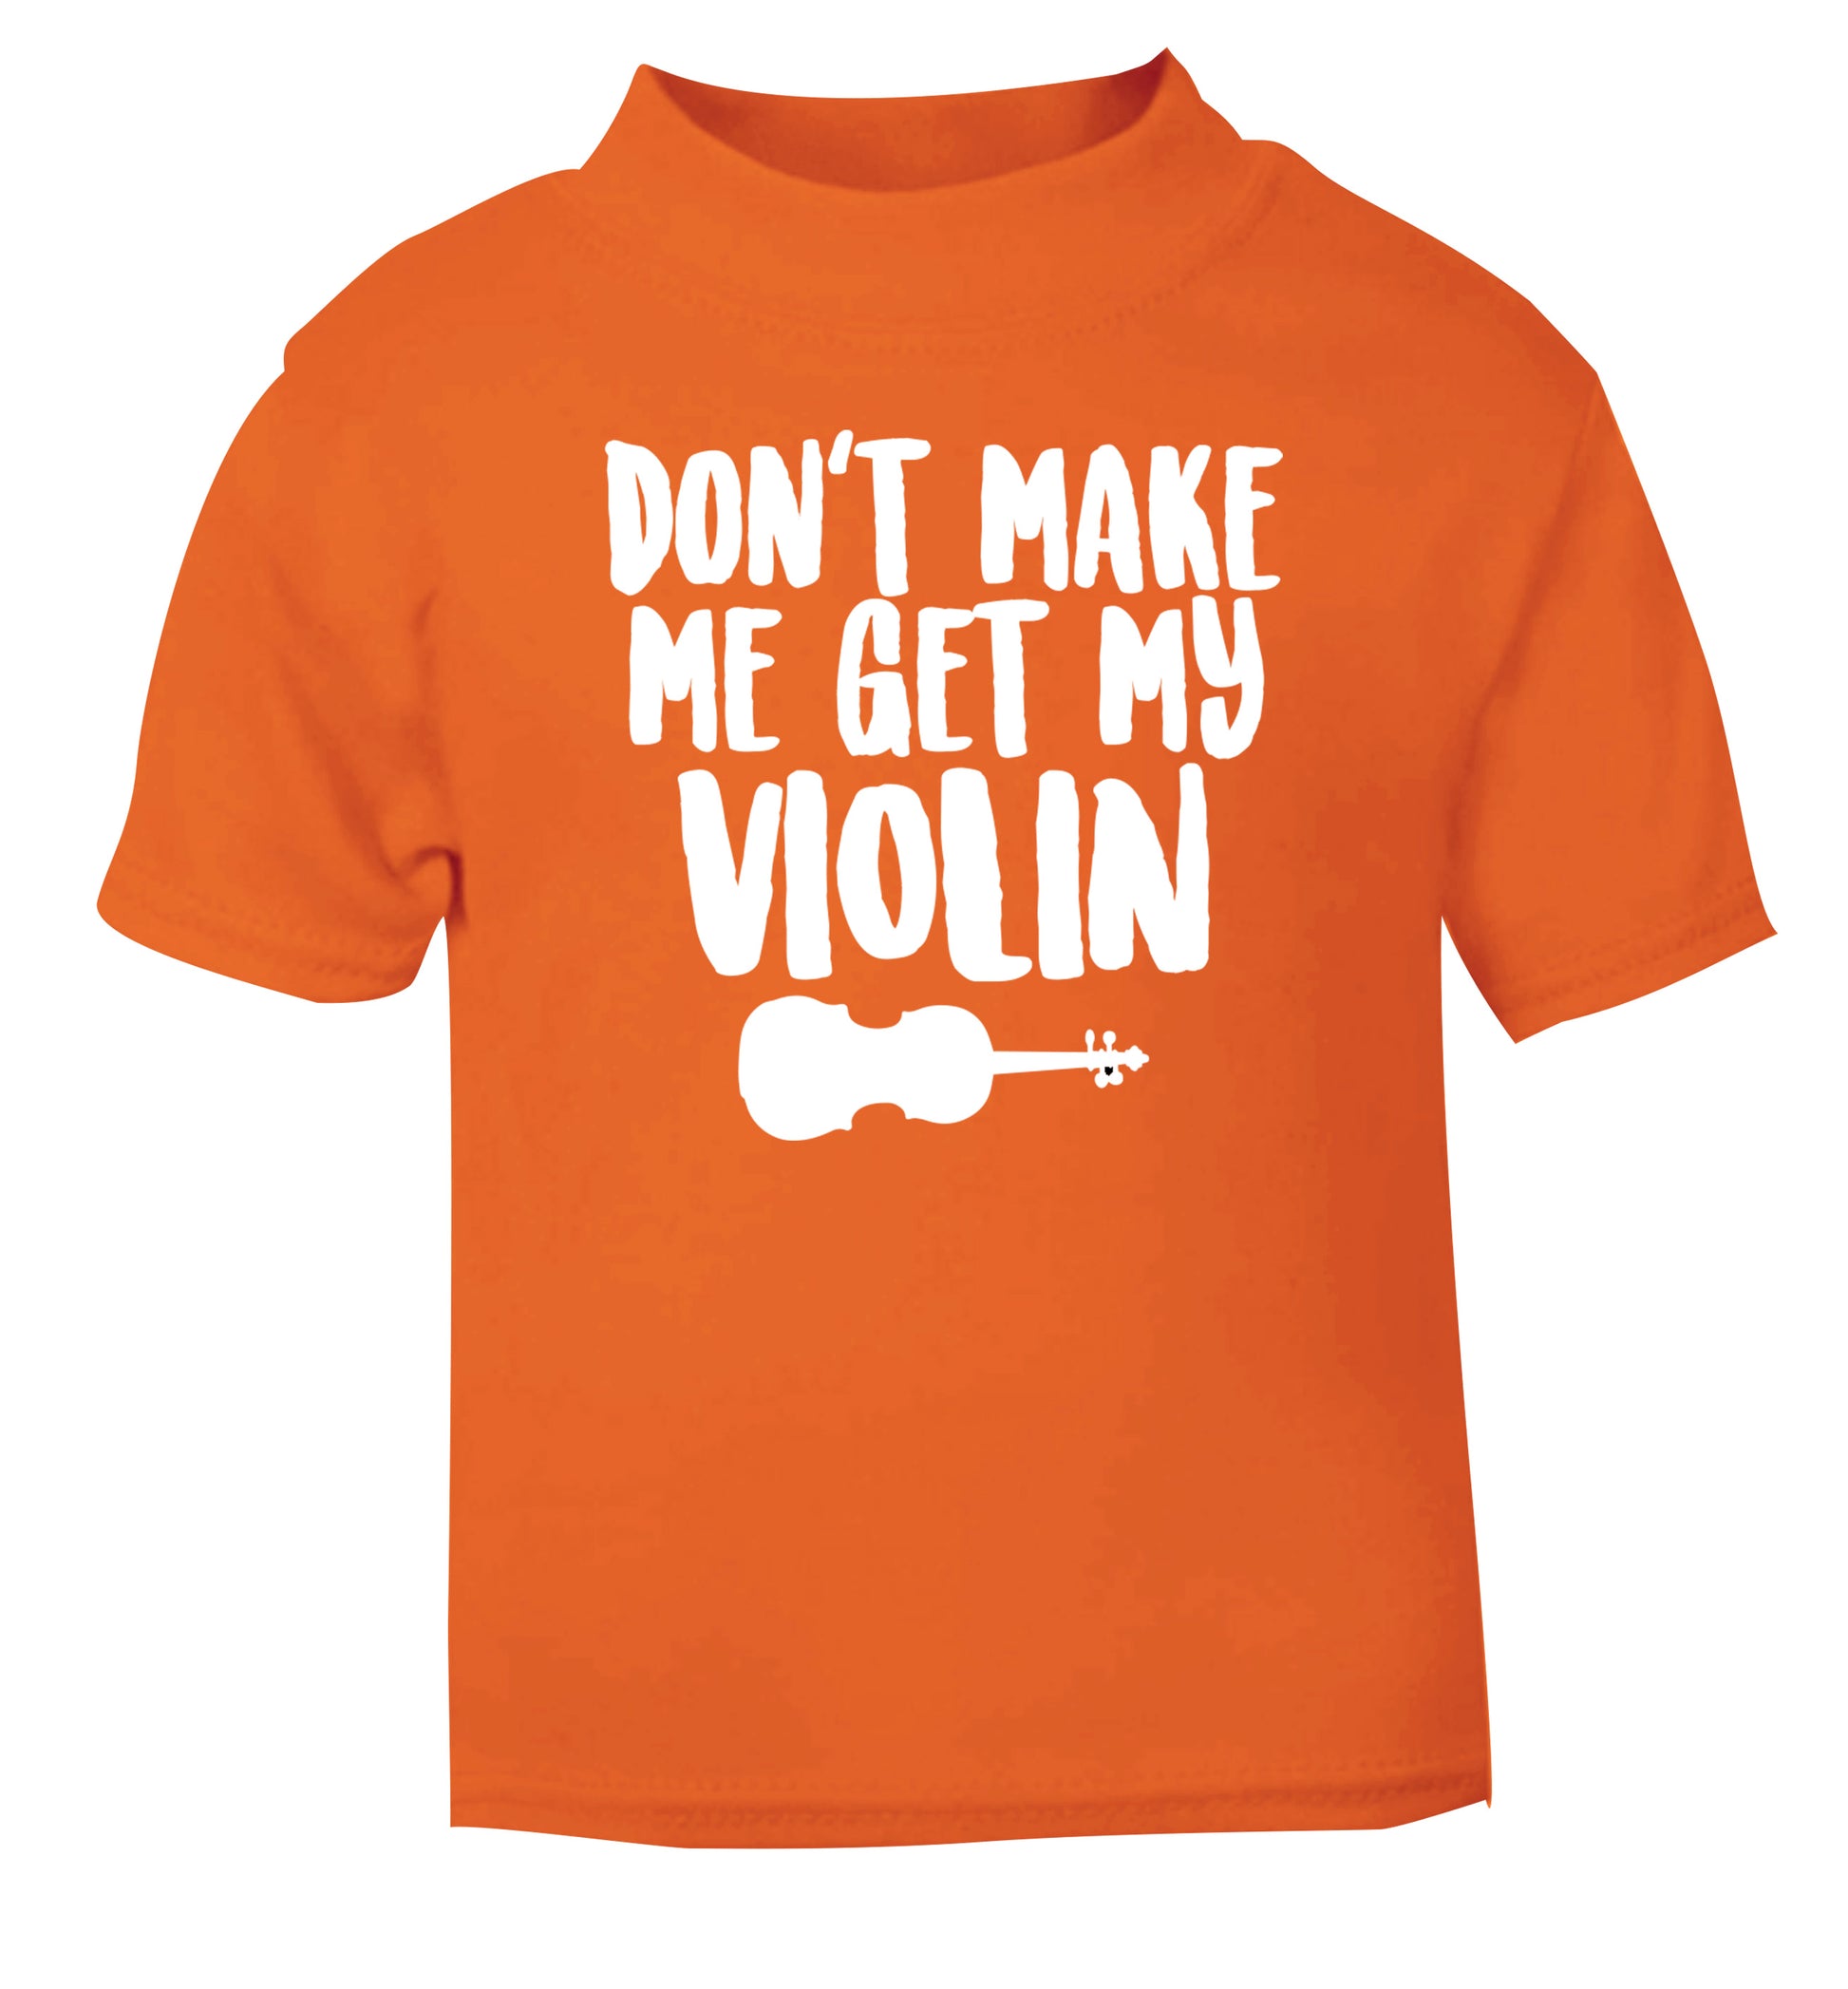 Don't make me get my violin orange Baby Toddler Tshirt 2 Years